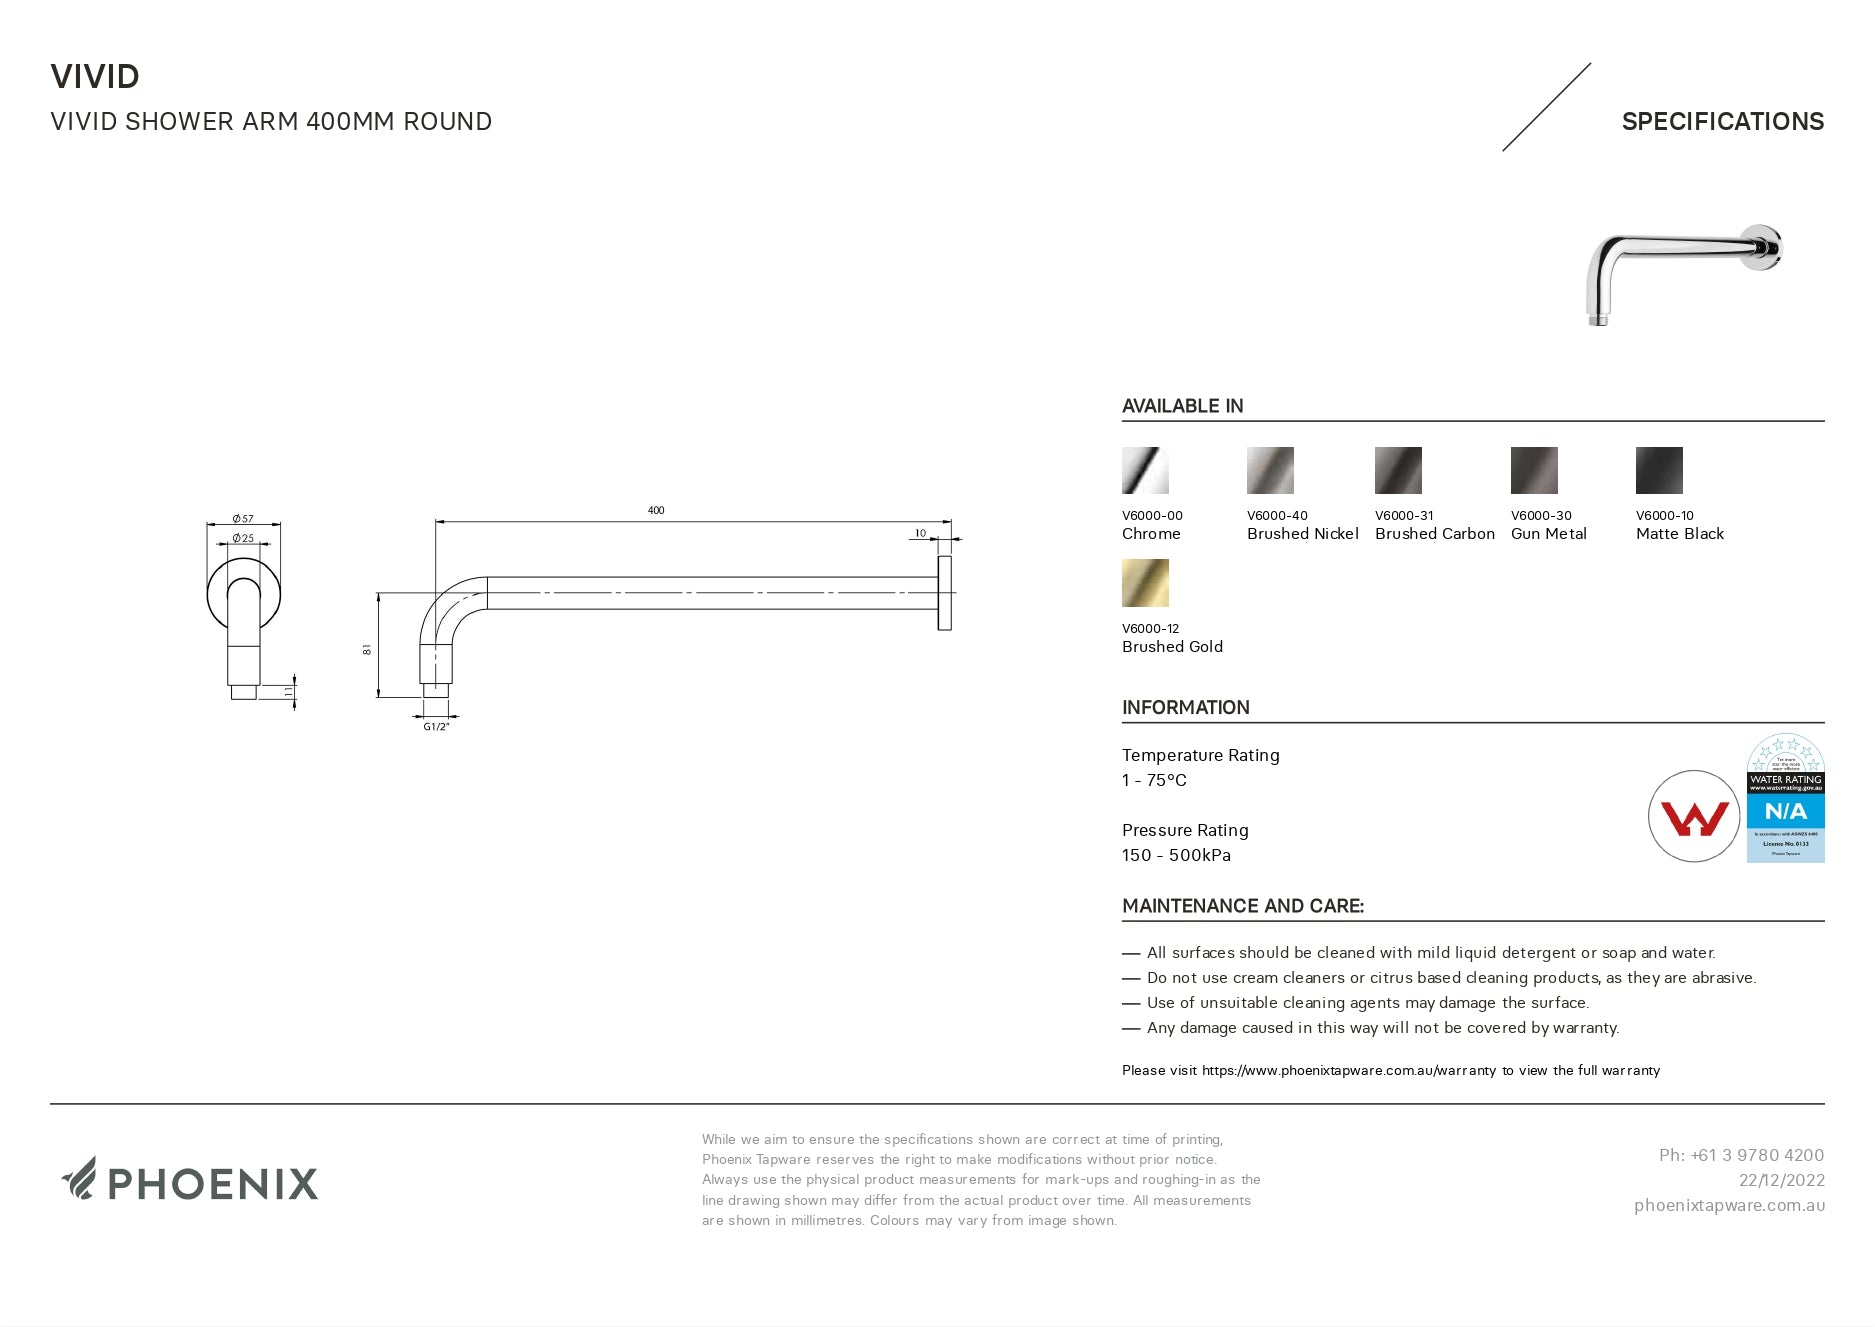 PHOENIX VIVID SHOWER ARM ROUND GUN METAL 400MM